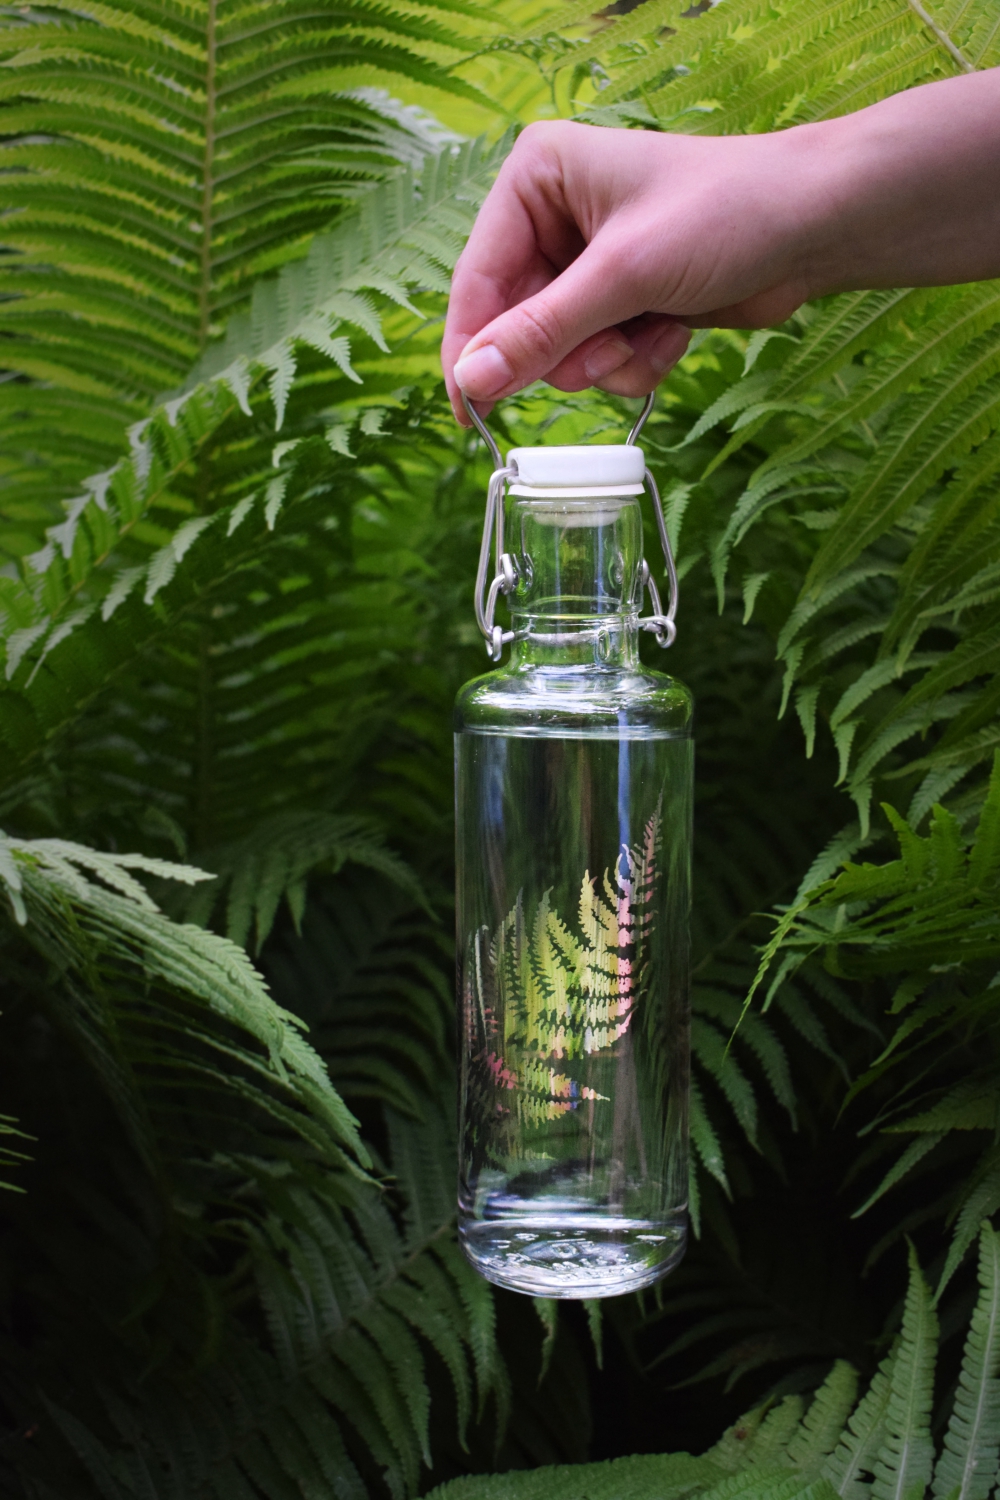 Wer sein Wasser aus den stylishen wiederverwendbaren Glasflaschen von Soulbottles trinkt, kann ganz leicht etwas Gutes für die Umwelt tun.